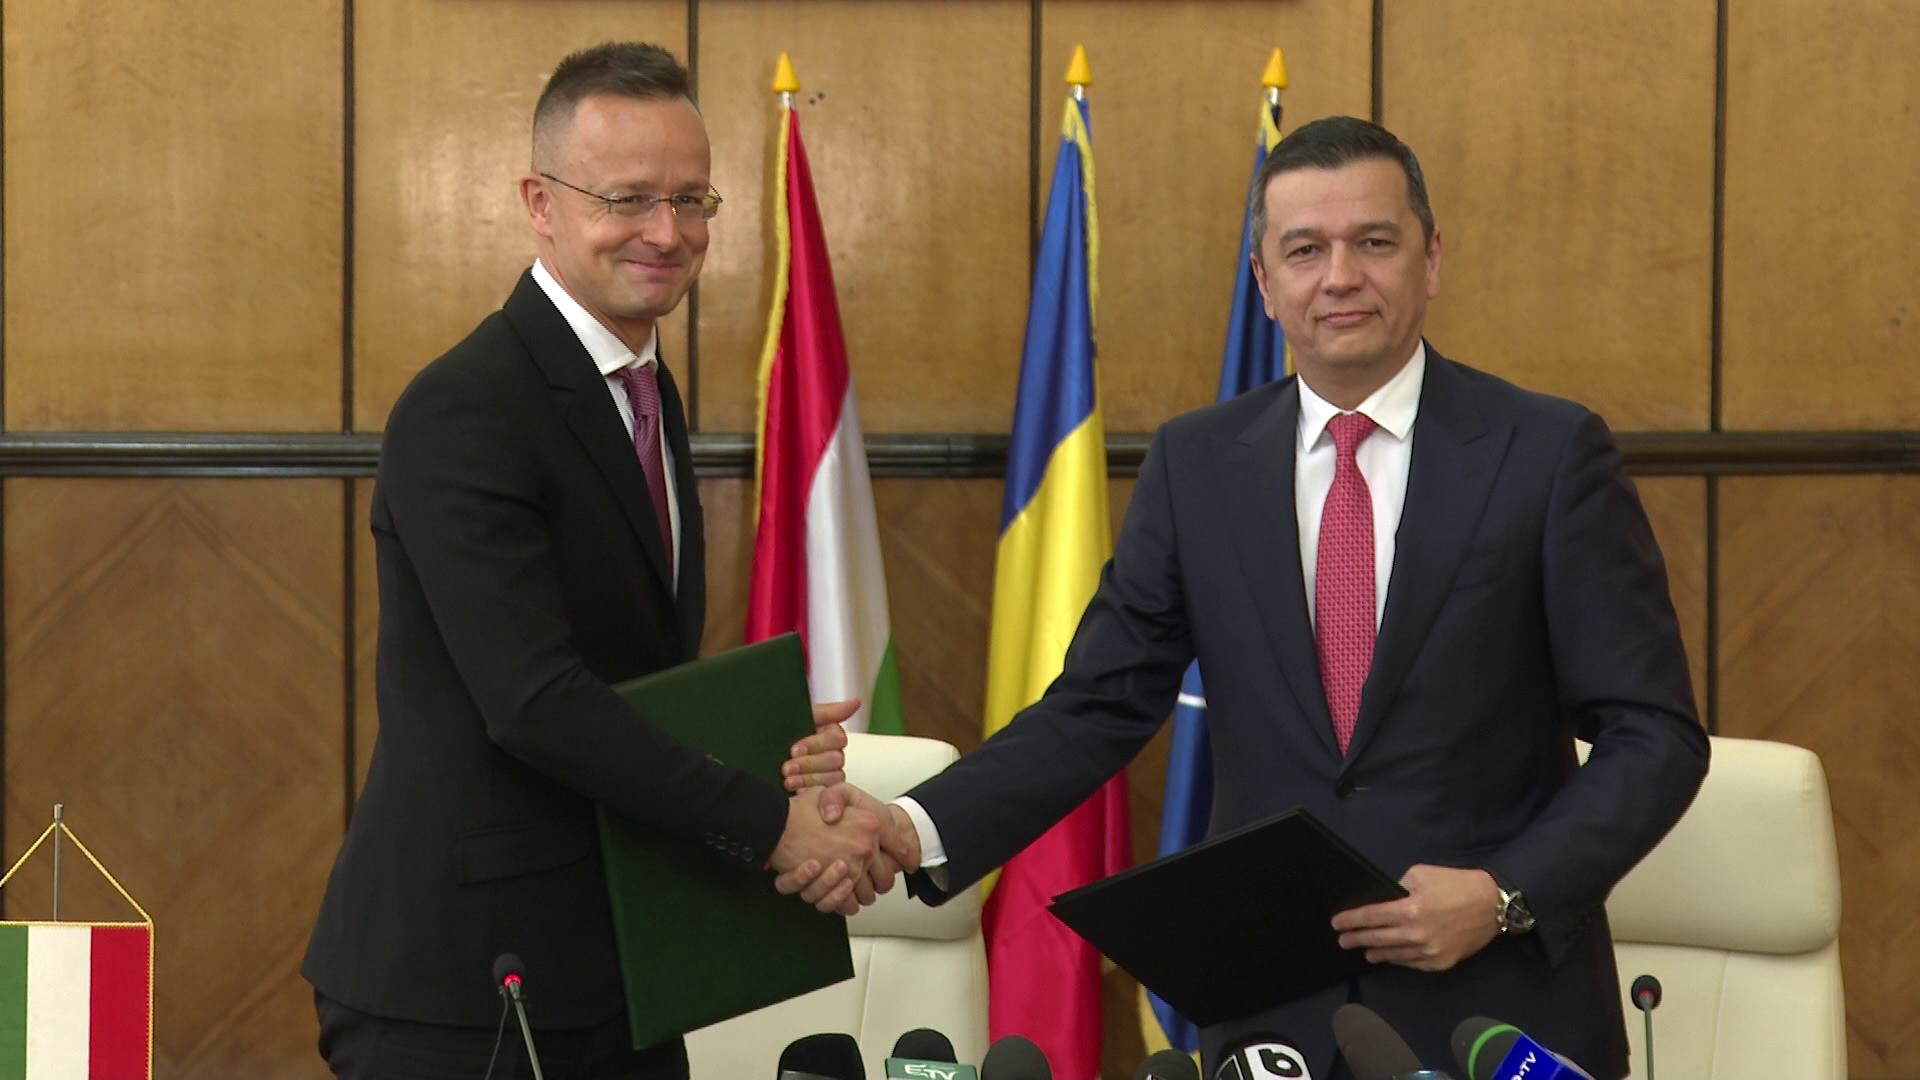 2030-ra megépül a negyedik gyorsforgalmi útkapcsolat is Magyarország és Románia között